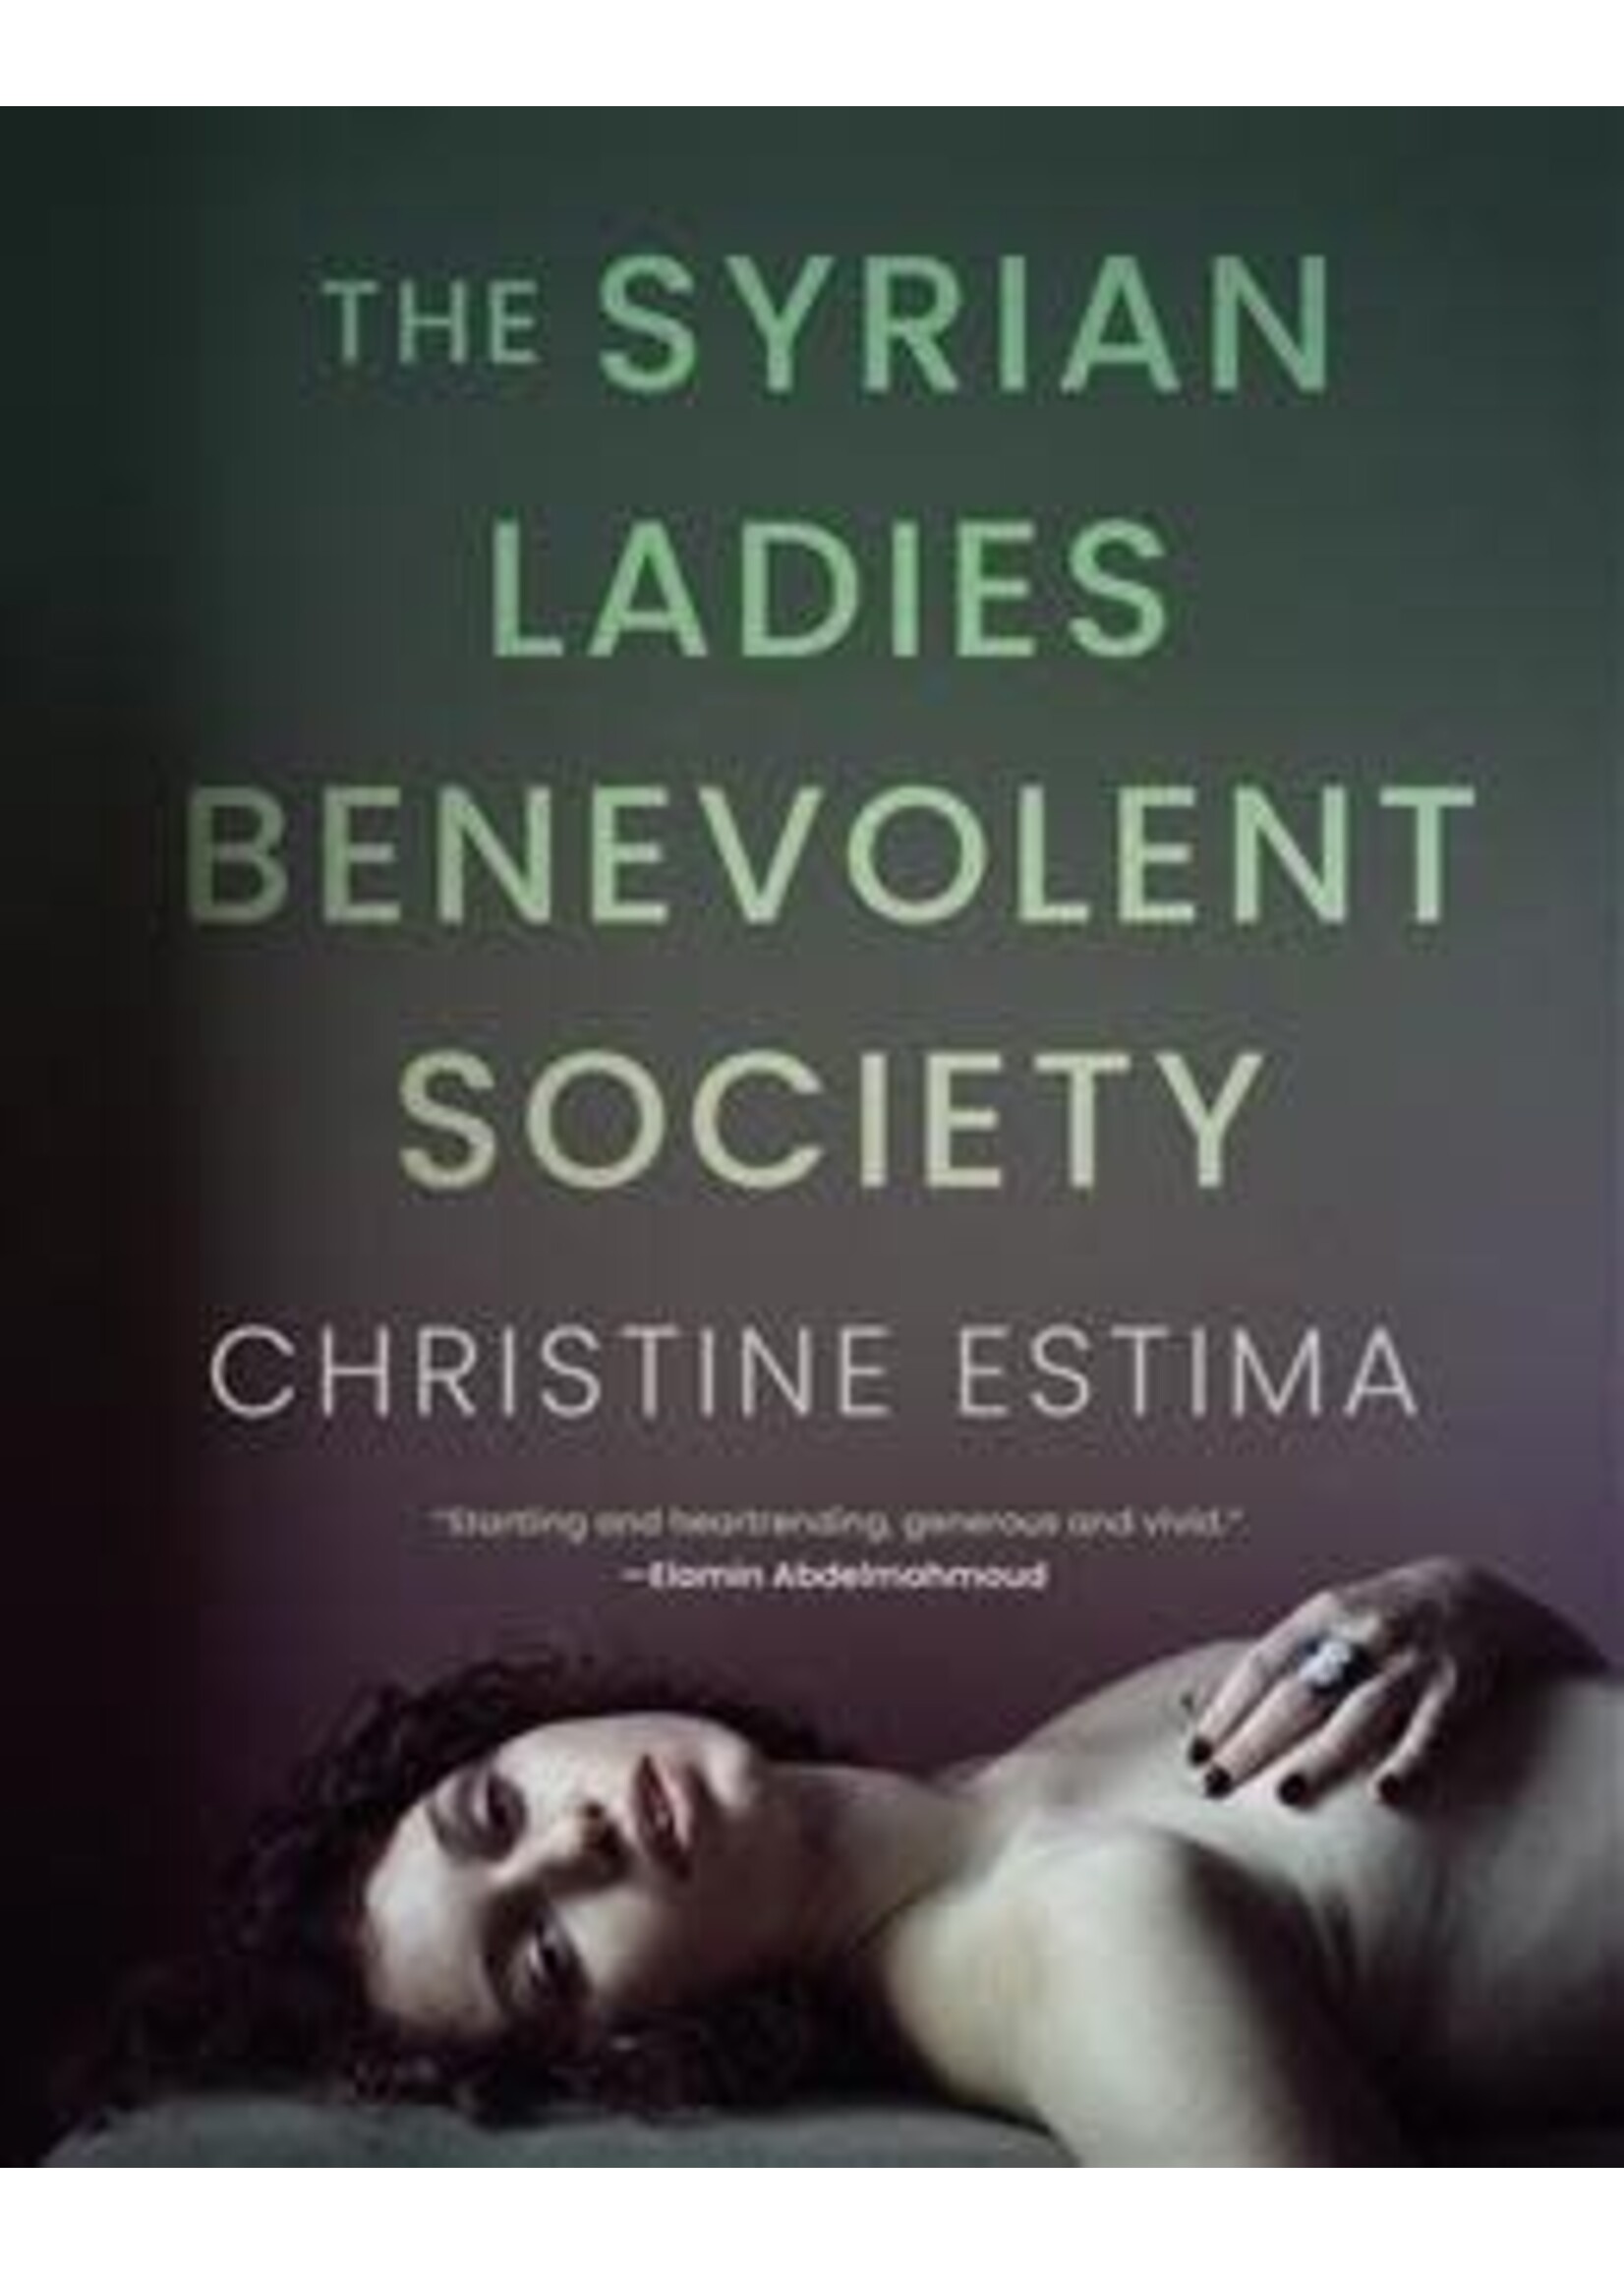 The Syrian Ladies Benevolent Society by Christine Estima